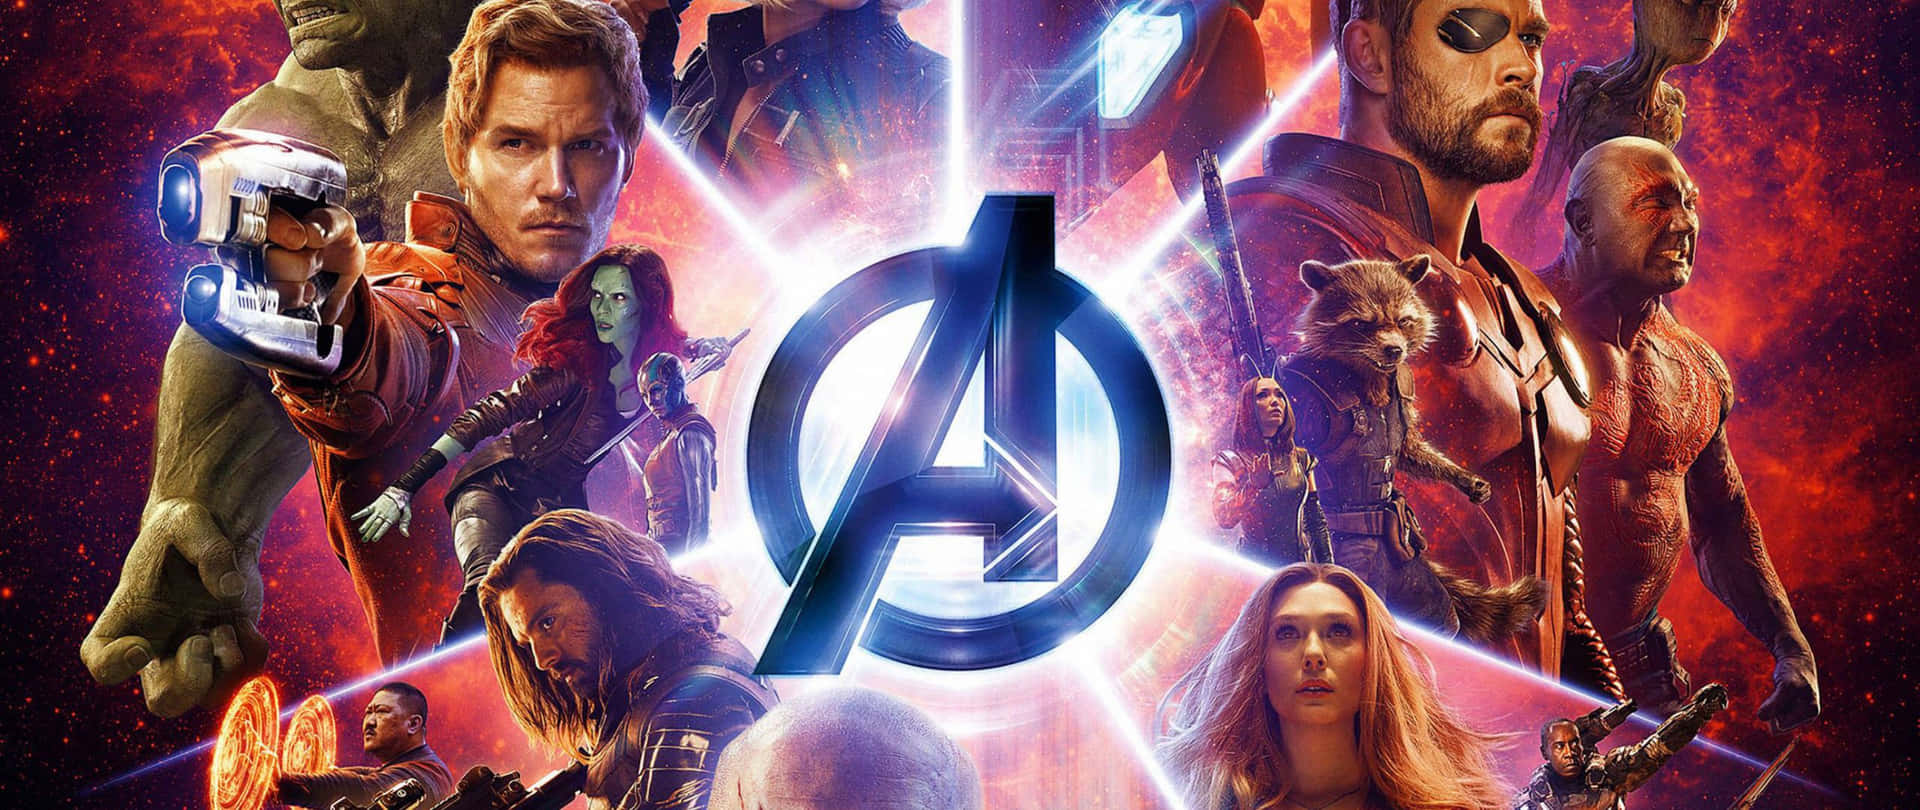 2560 X 1080 Marvel Avengers Endgame Poster Design Wallpaper